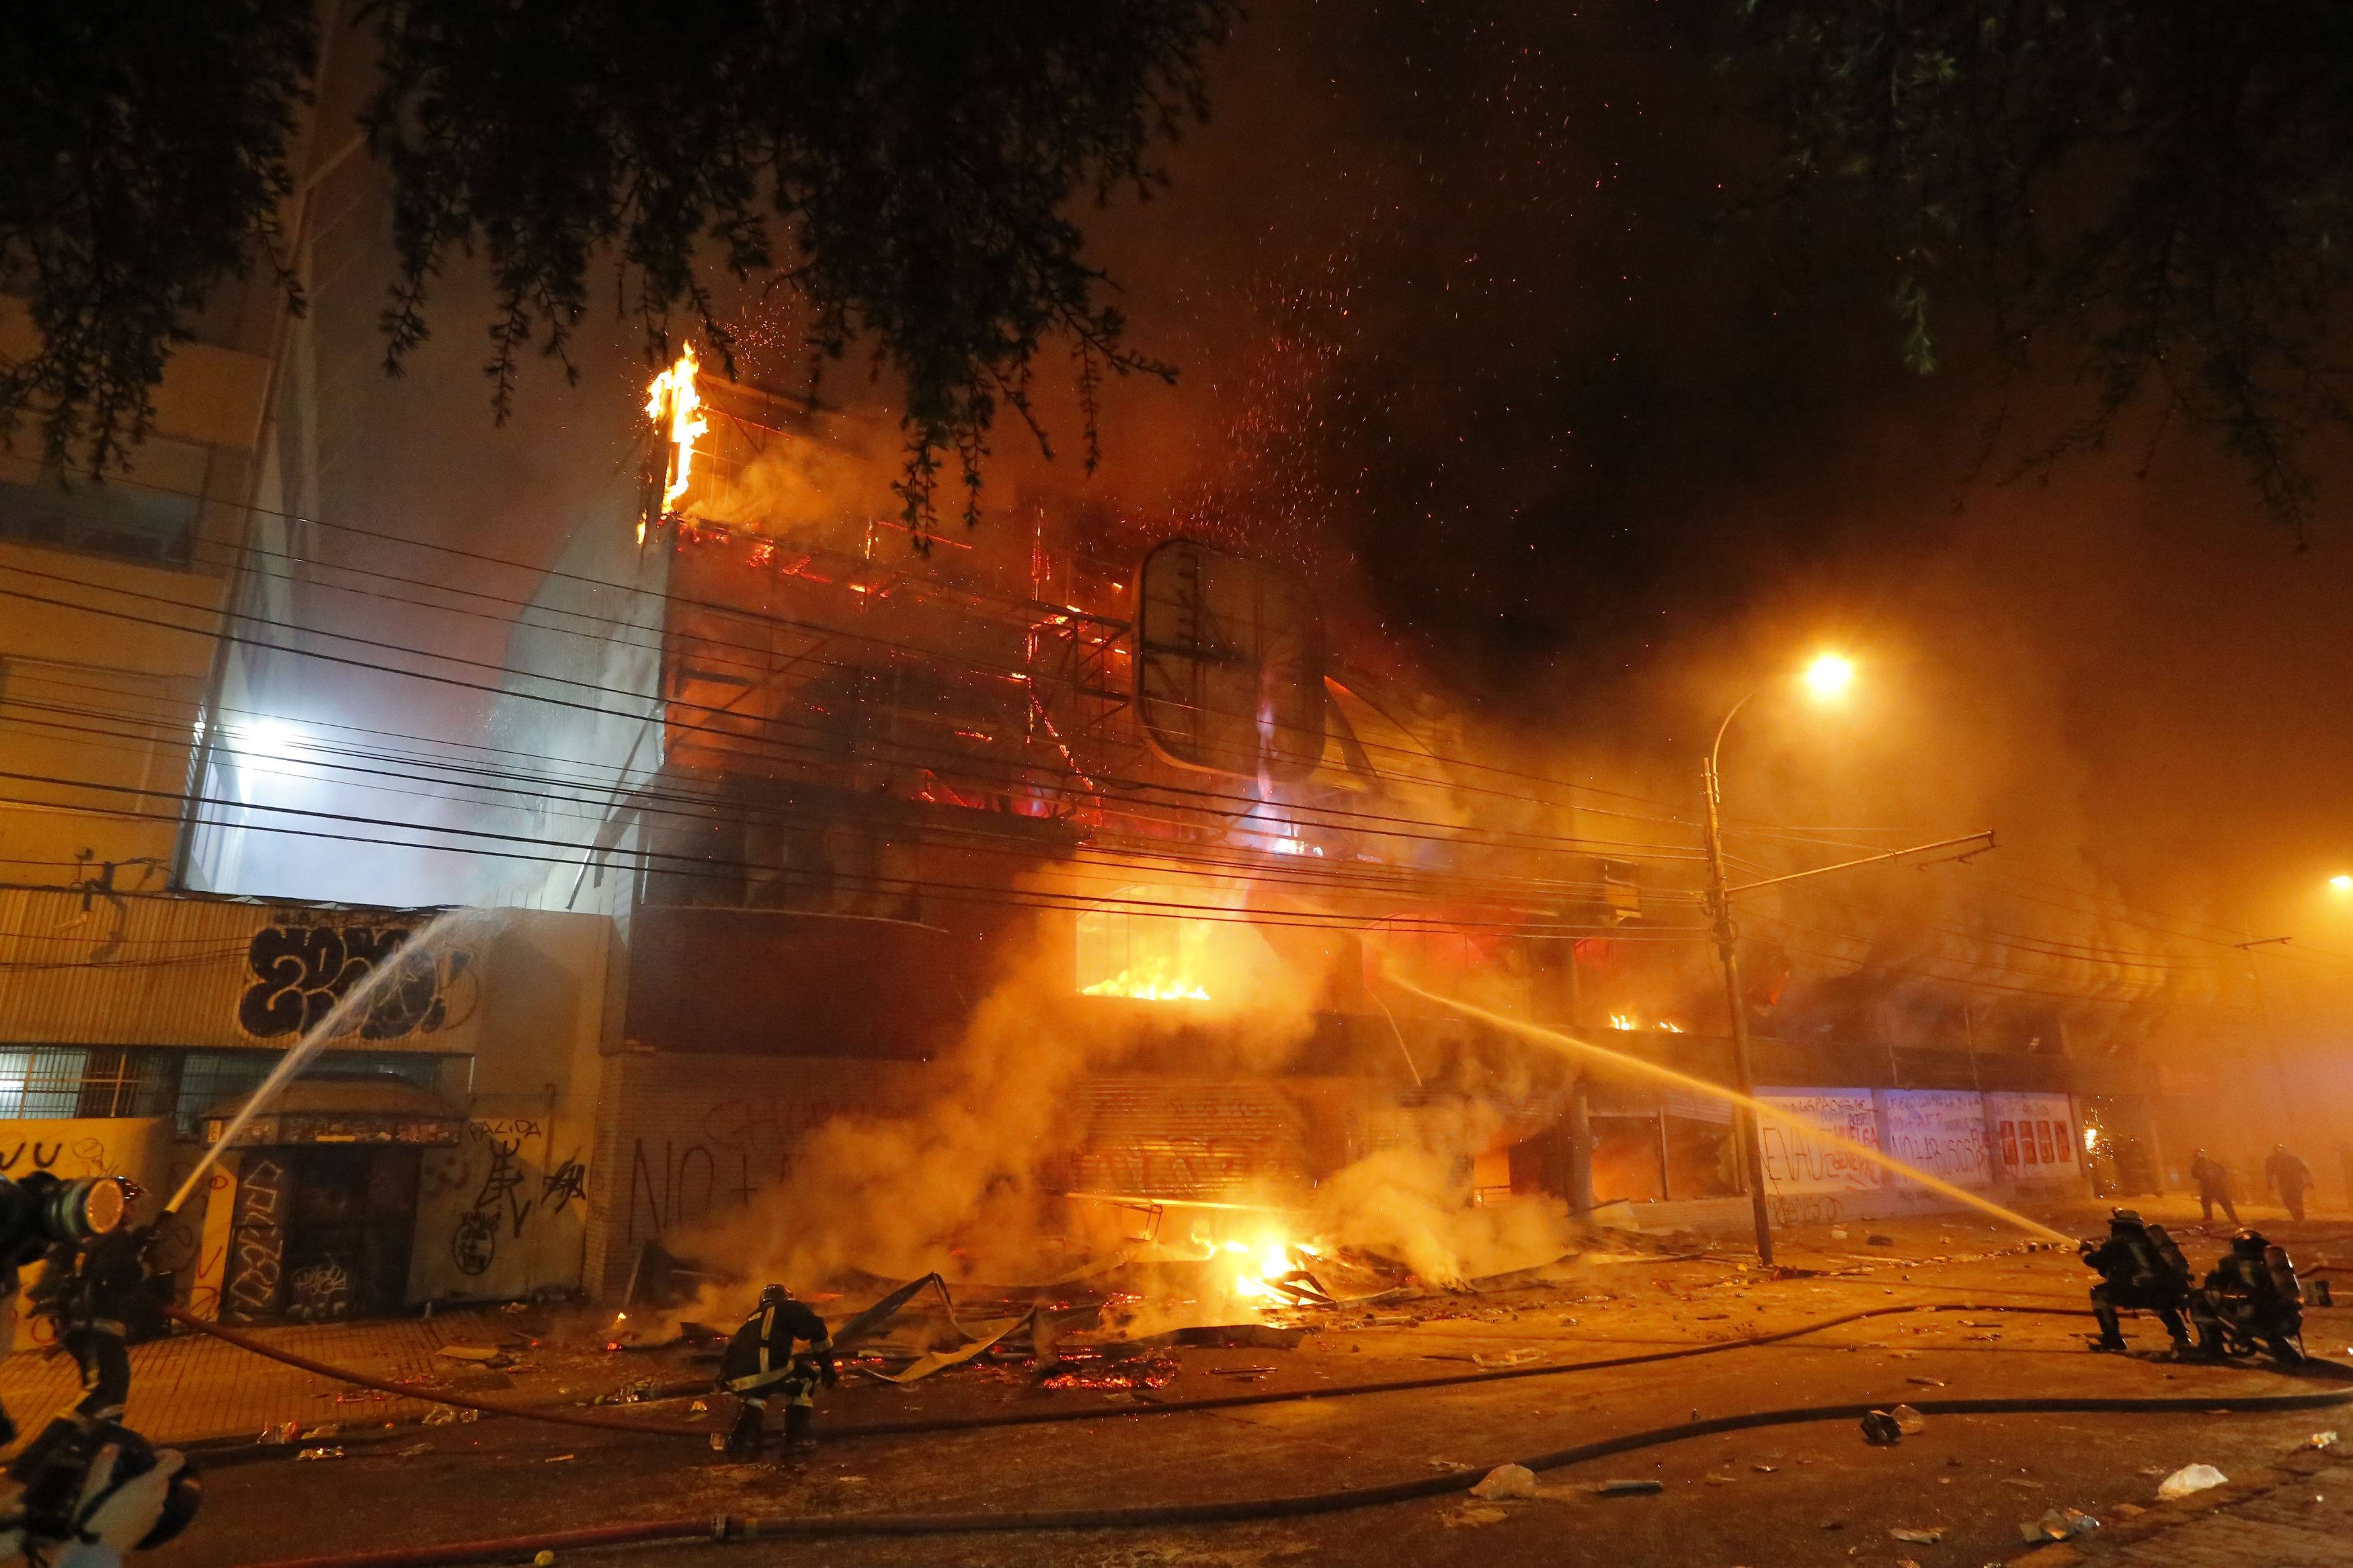 Supermercado Unimarc incendiado en Valparaíso. Créditos: Agencia Uno